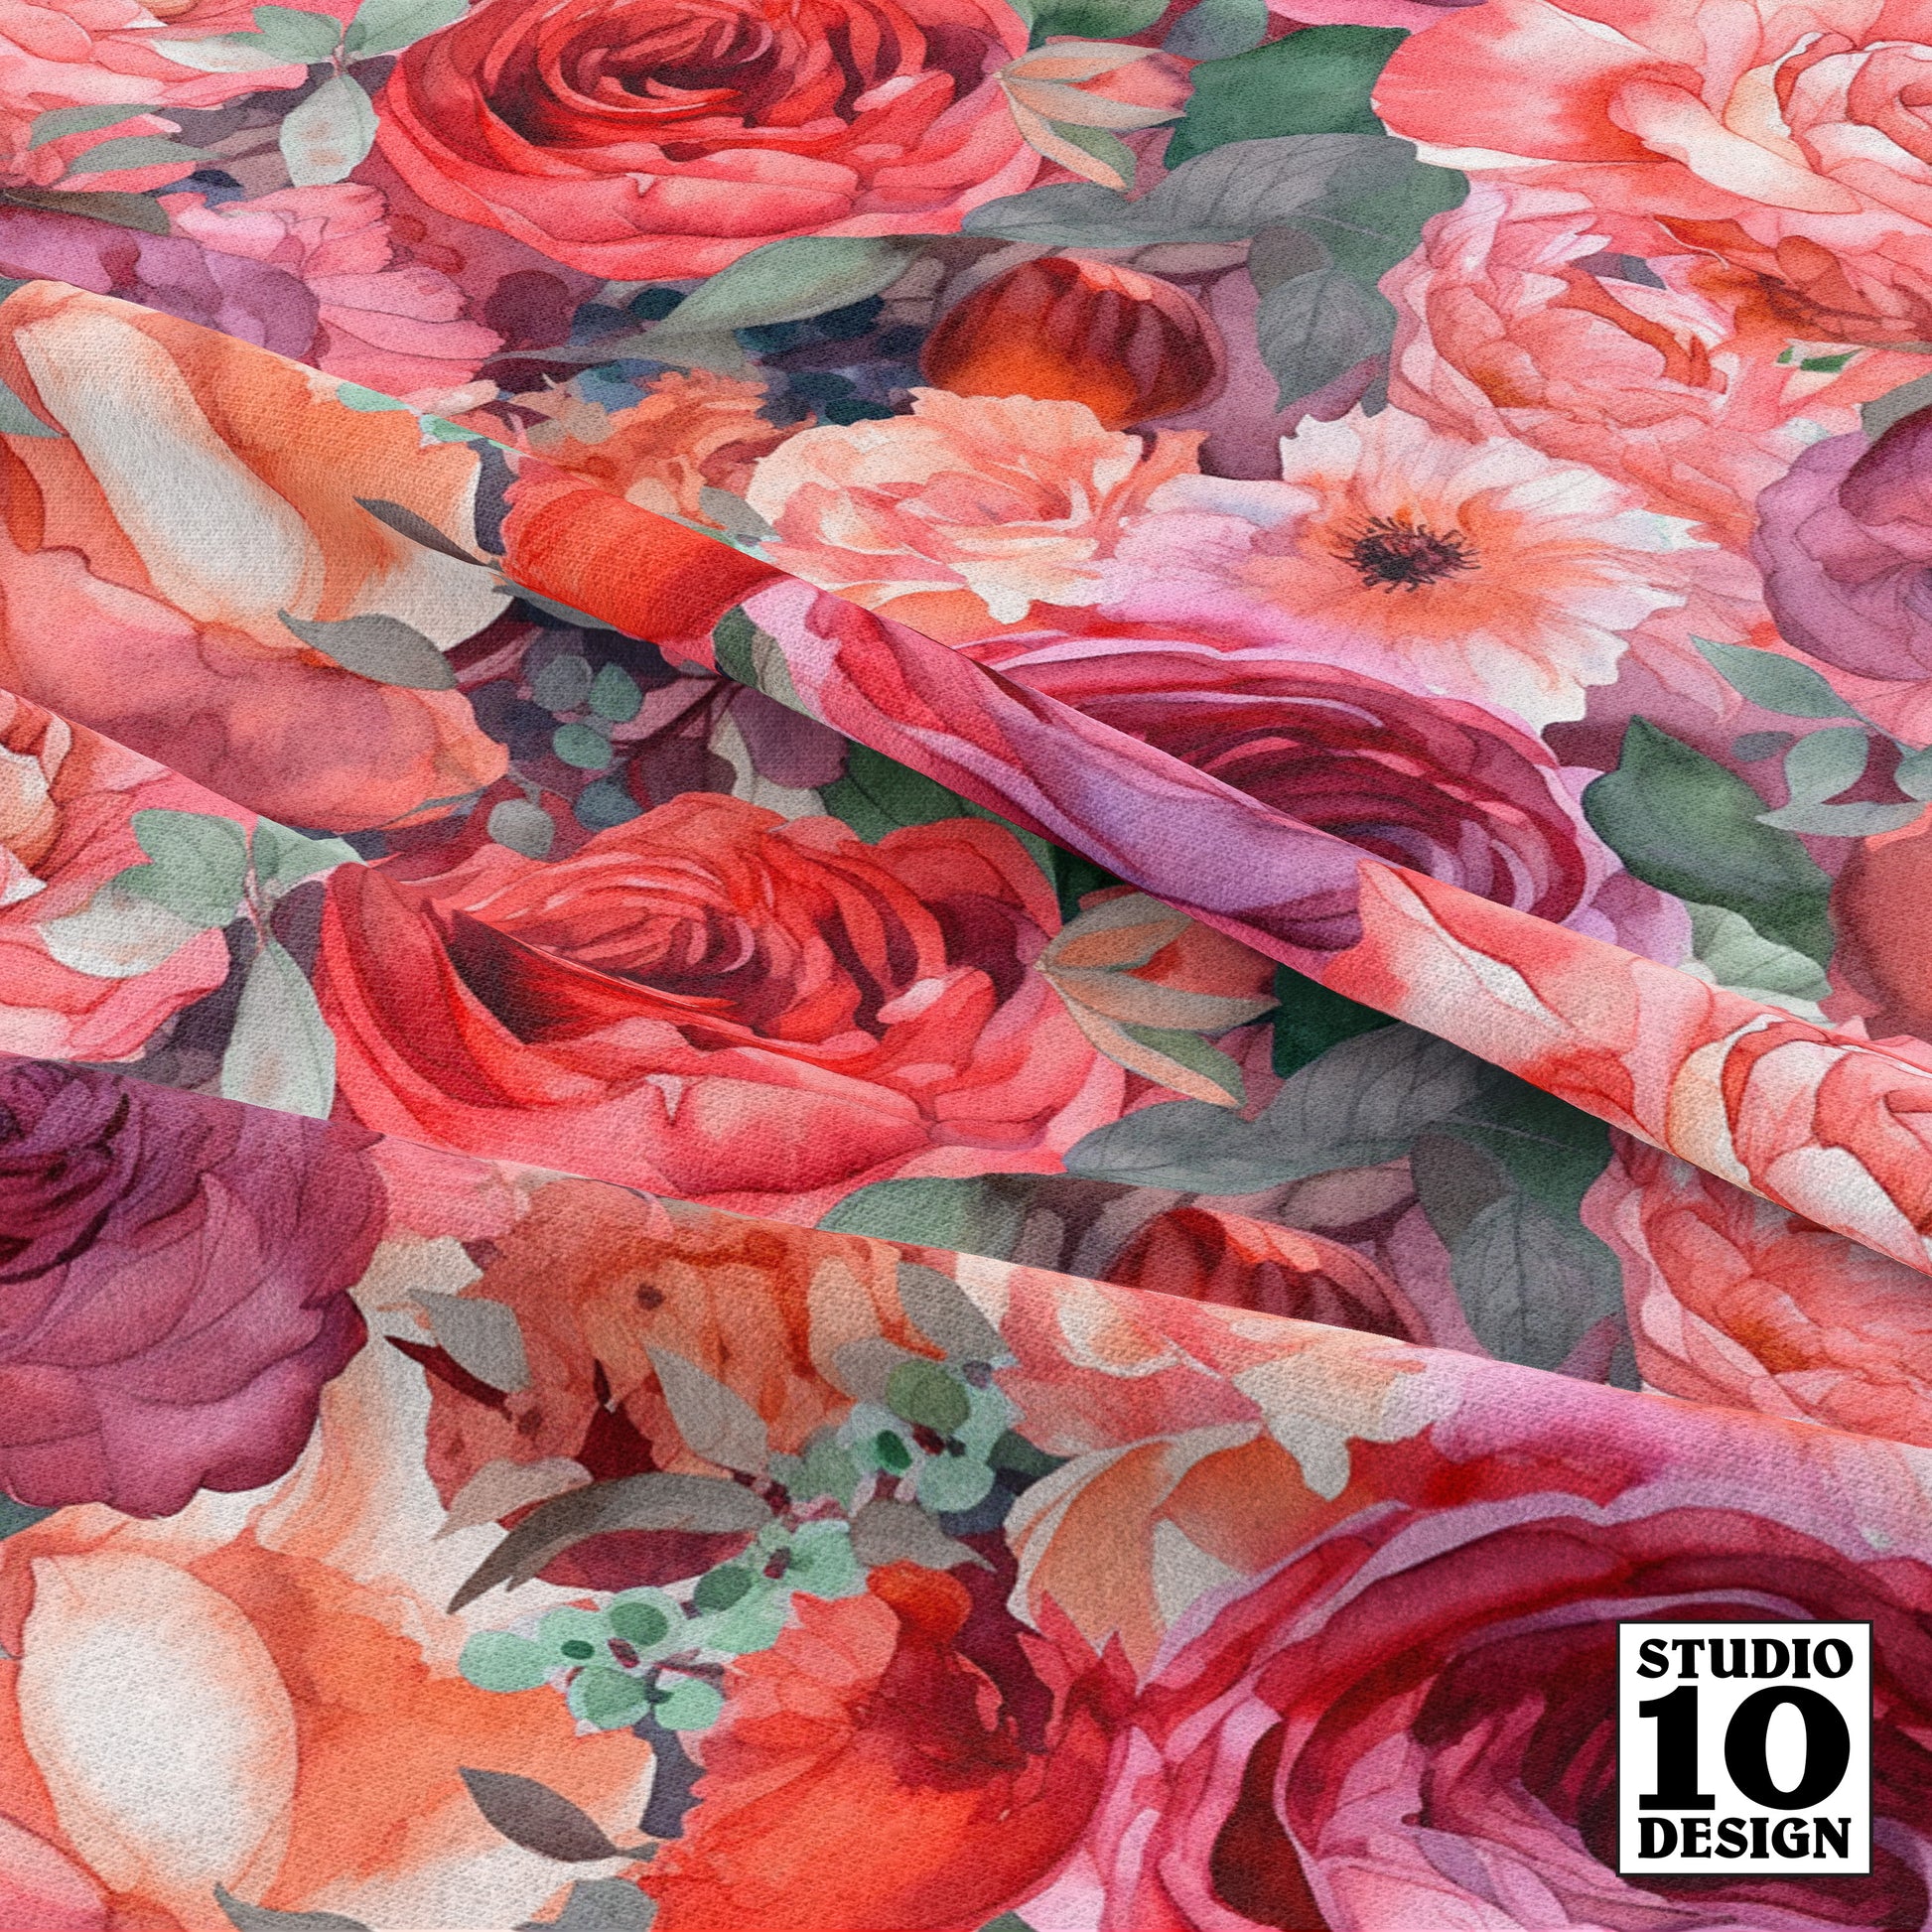 Light Watercolor Roses Printed Fabric by Studio Ten Design